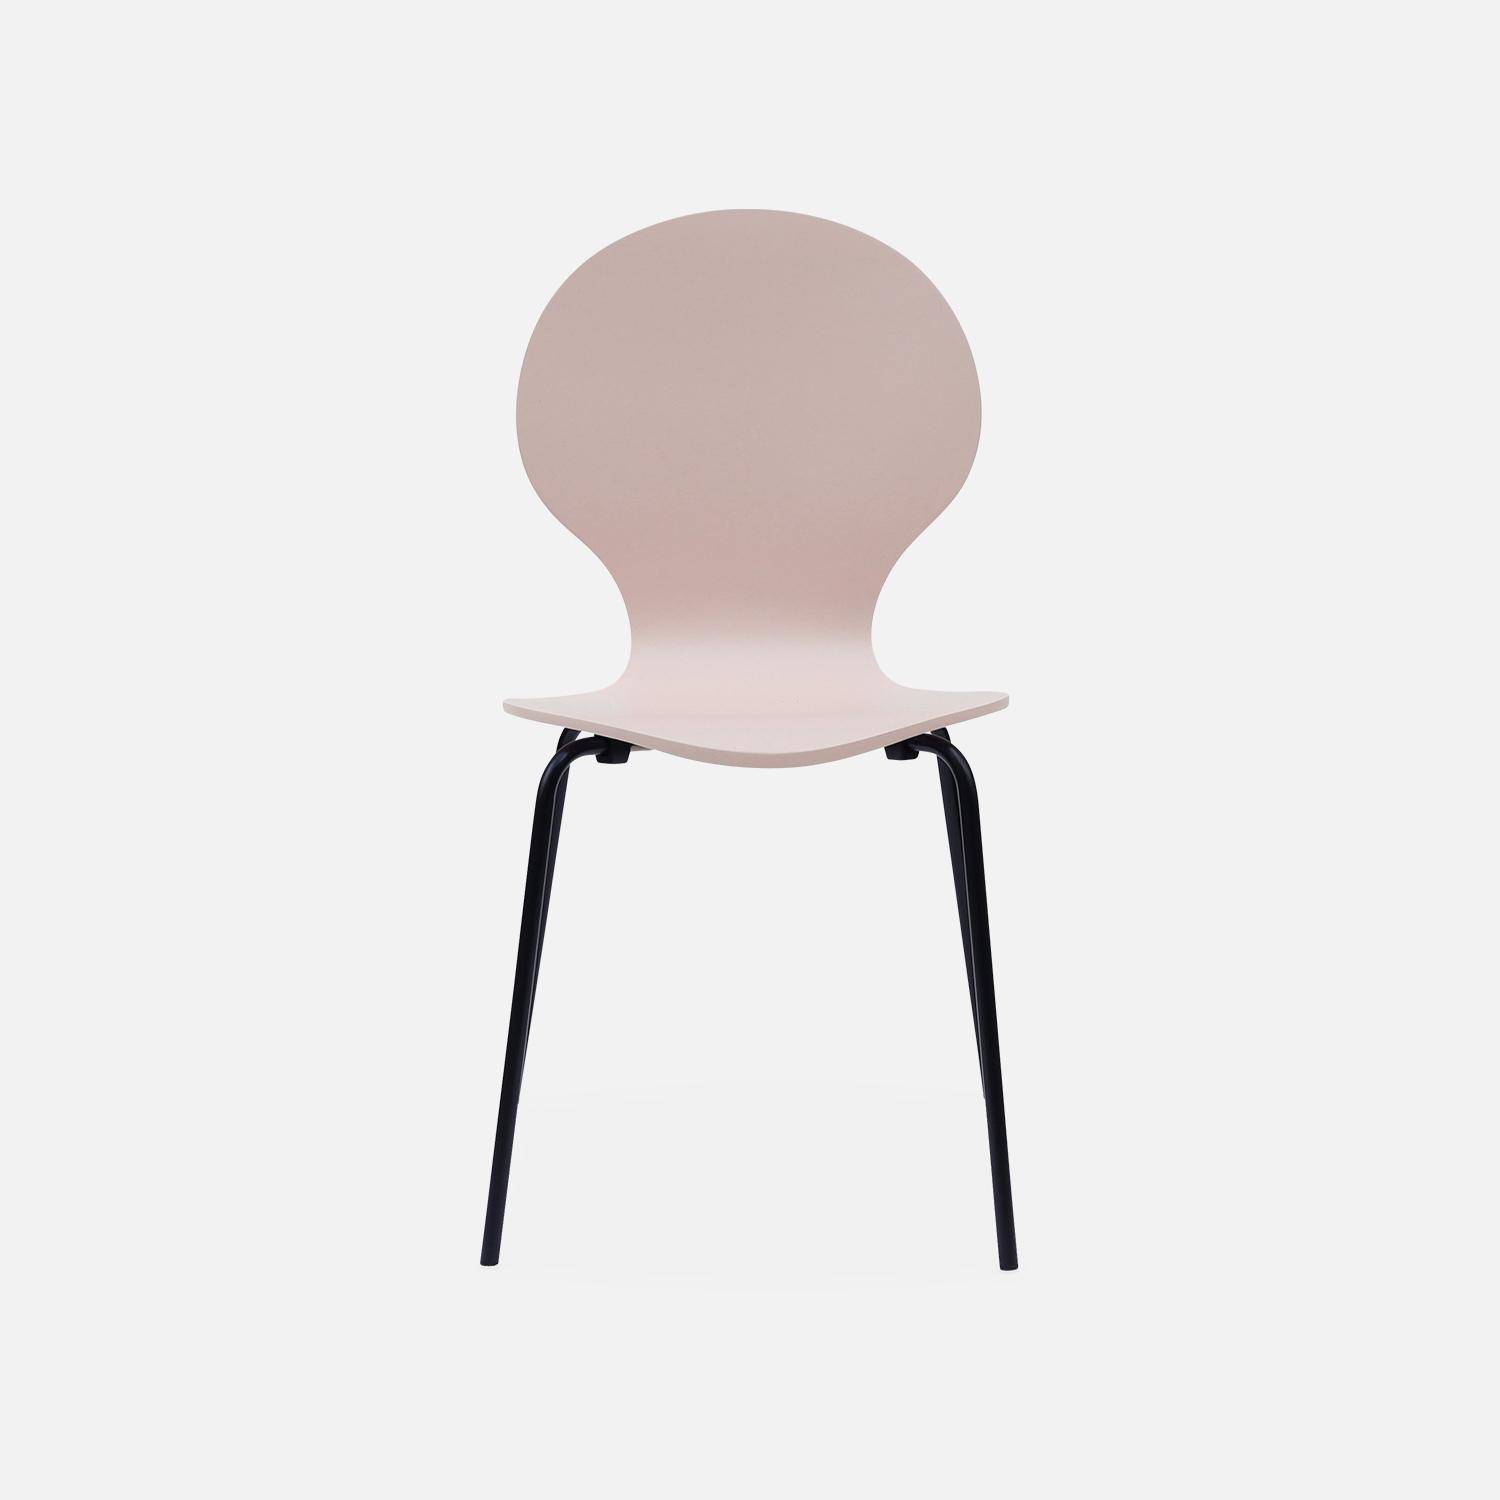 Juego de 4 sillas apilables retro rosa, madera de hevea y contrachapada, patas de acero, Naomi, A 43 x P 48 x Alt 87cm,sweeek,Photo5